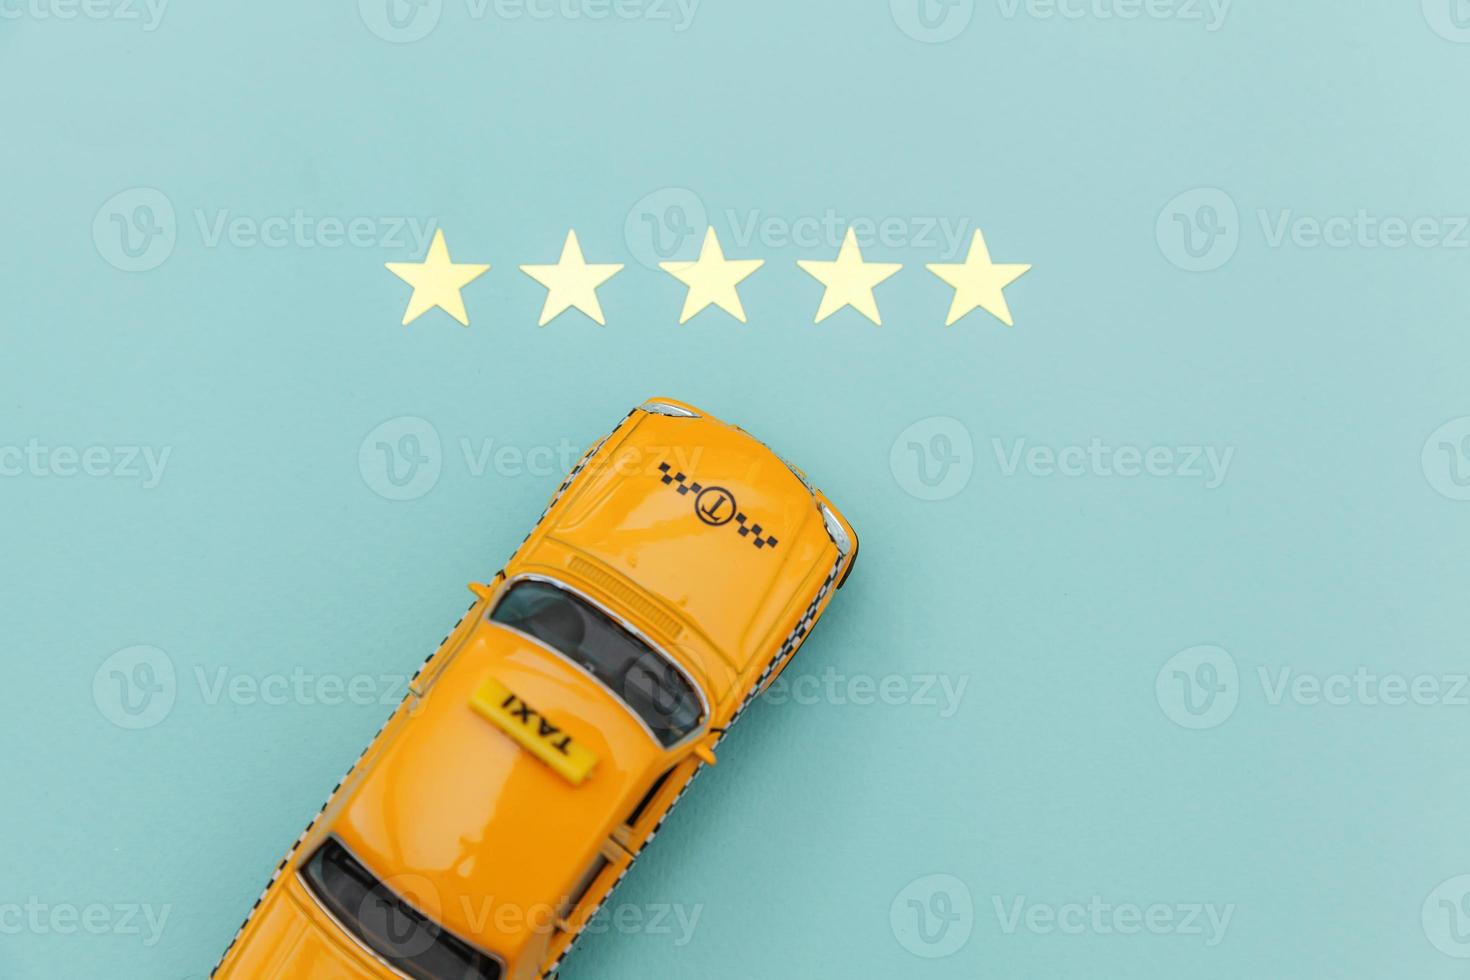 gul leksaksbil taxi cab och 5 stjärnor betyg isolerad på blå bakgrund. smartphoneapplikation av taxitjänst för onlinesökning, ringa och boka taxikoncept. taxi symbol. kopieringsutrymme. foto